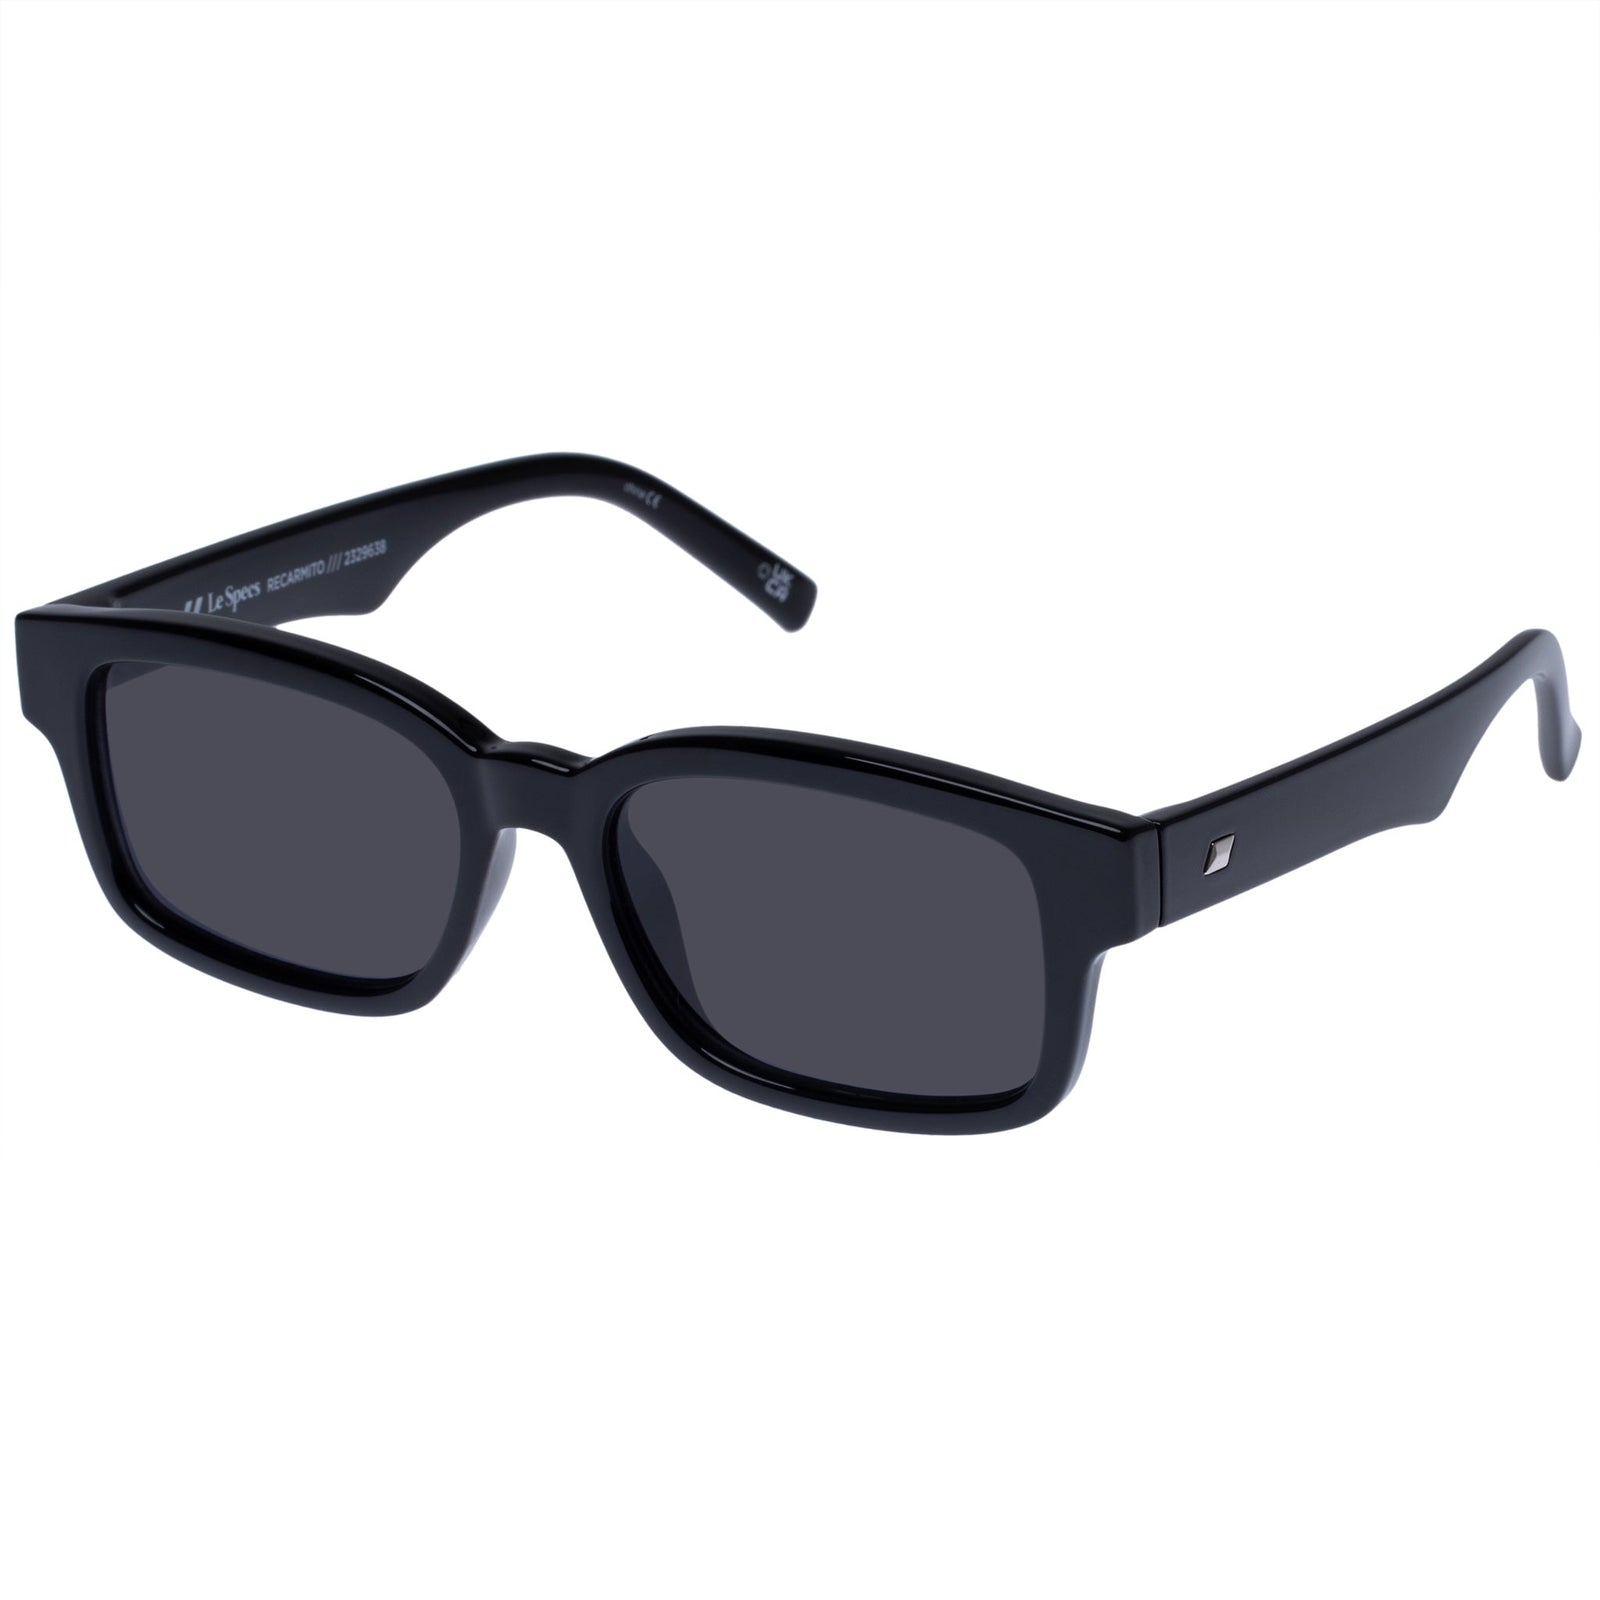 Le Specs Recarmito Rectangular Sunglasses in Black